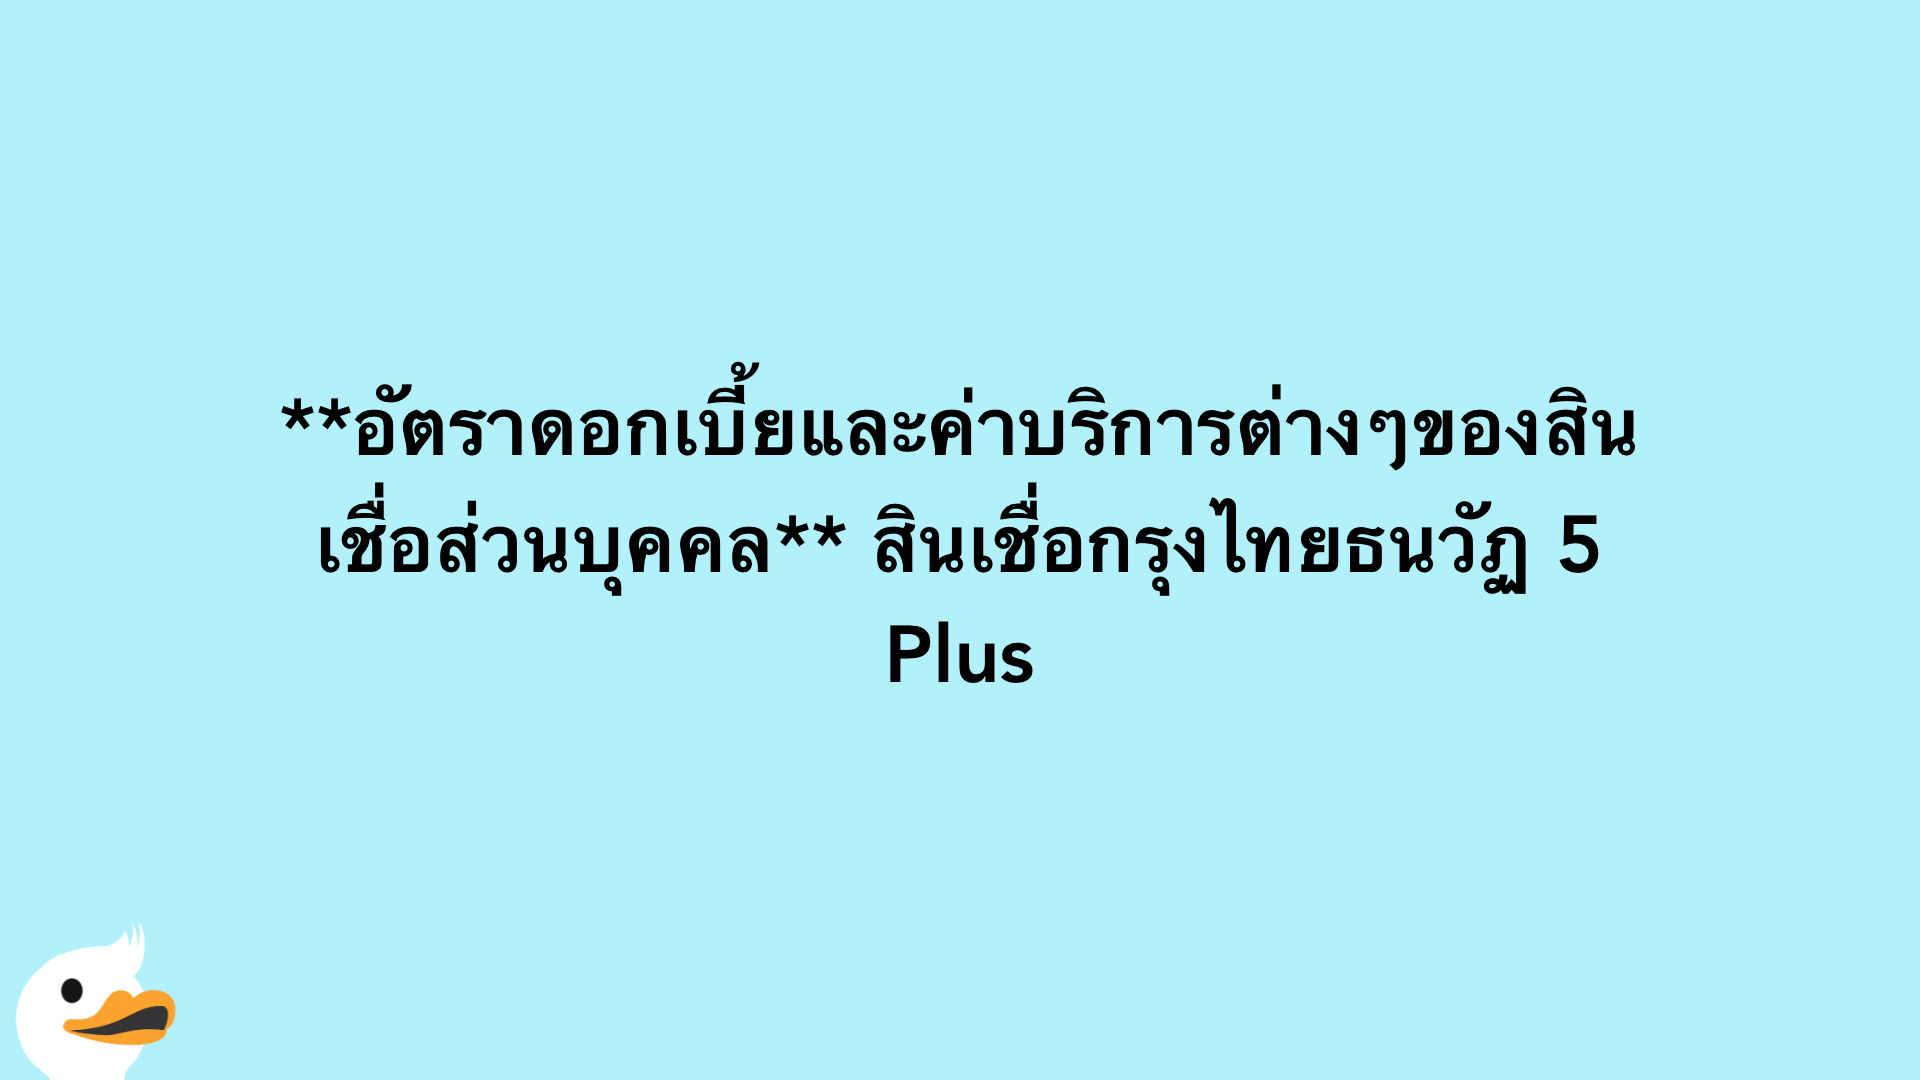 อัตราดอกเบี้ยและค่าบริการต่างๆของสินเชื่อส่วนบุคคล สินเชื่อกรุงไทยธนวัฏ 5 Plus